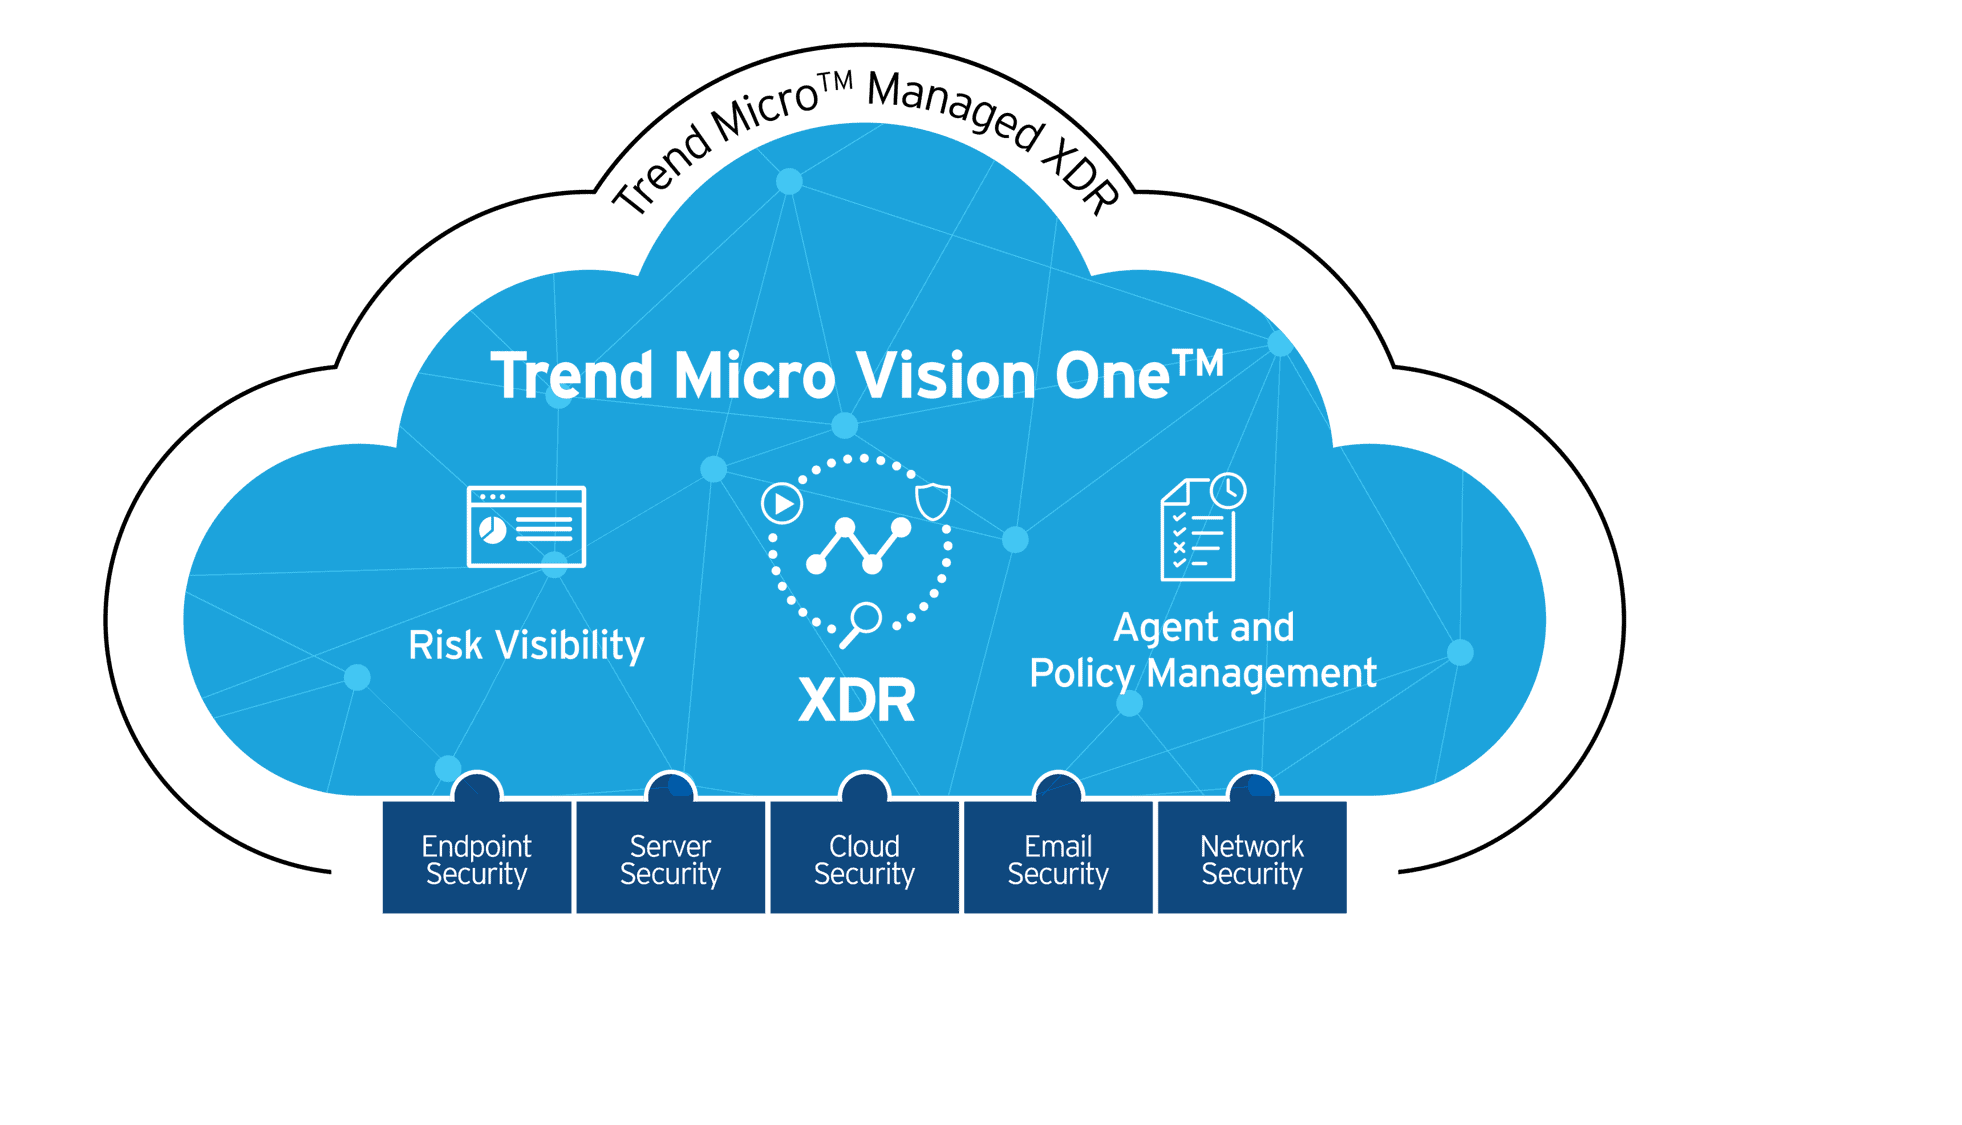 Trend Micro presentó en la región su nueva plataforma de seguridad Trend Micro Vision One